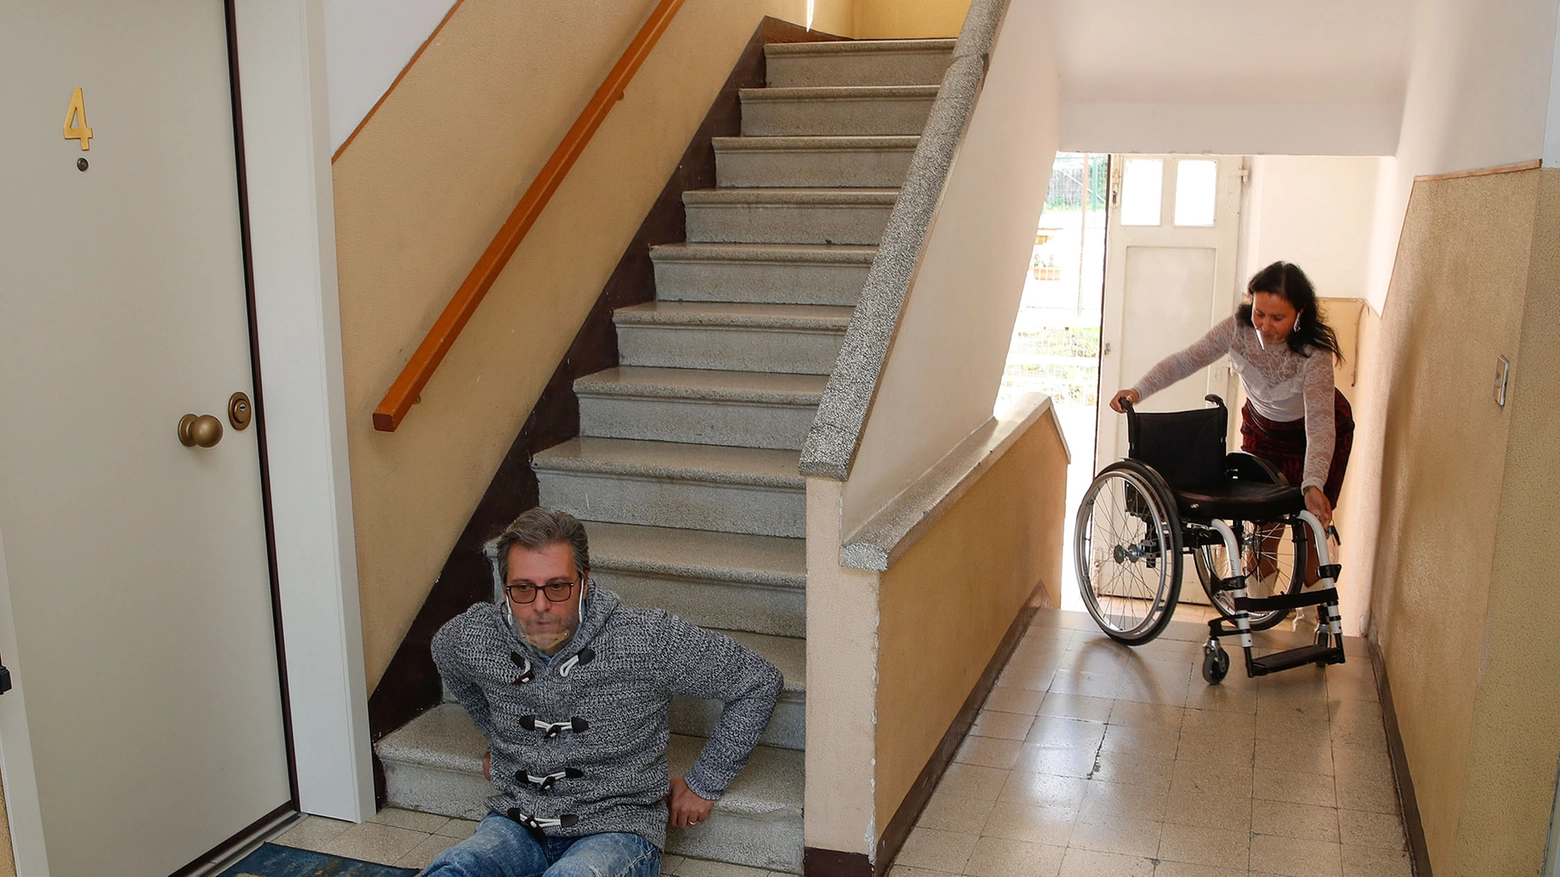 Danilo Tufariello, disabile, è costretto a strisciare per salire le scale (Fotoprint)